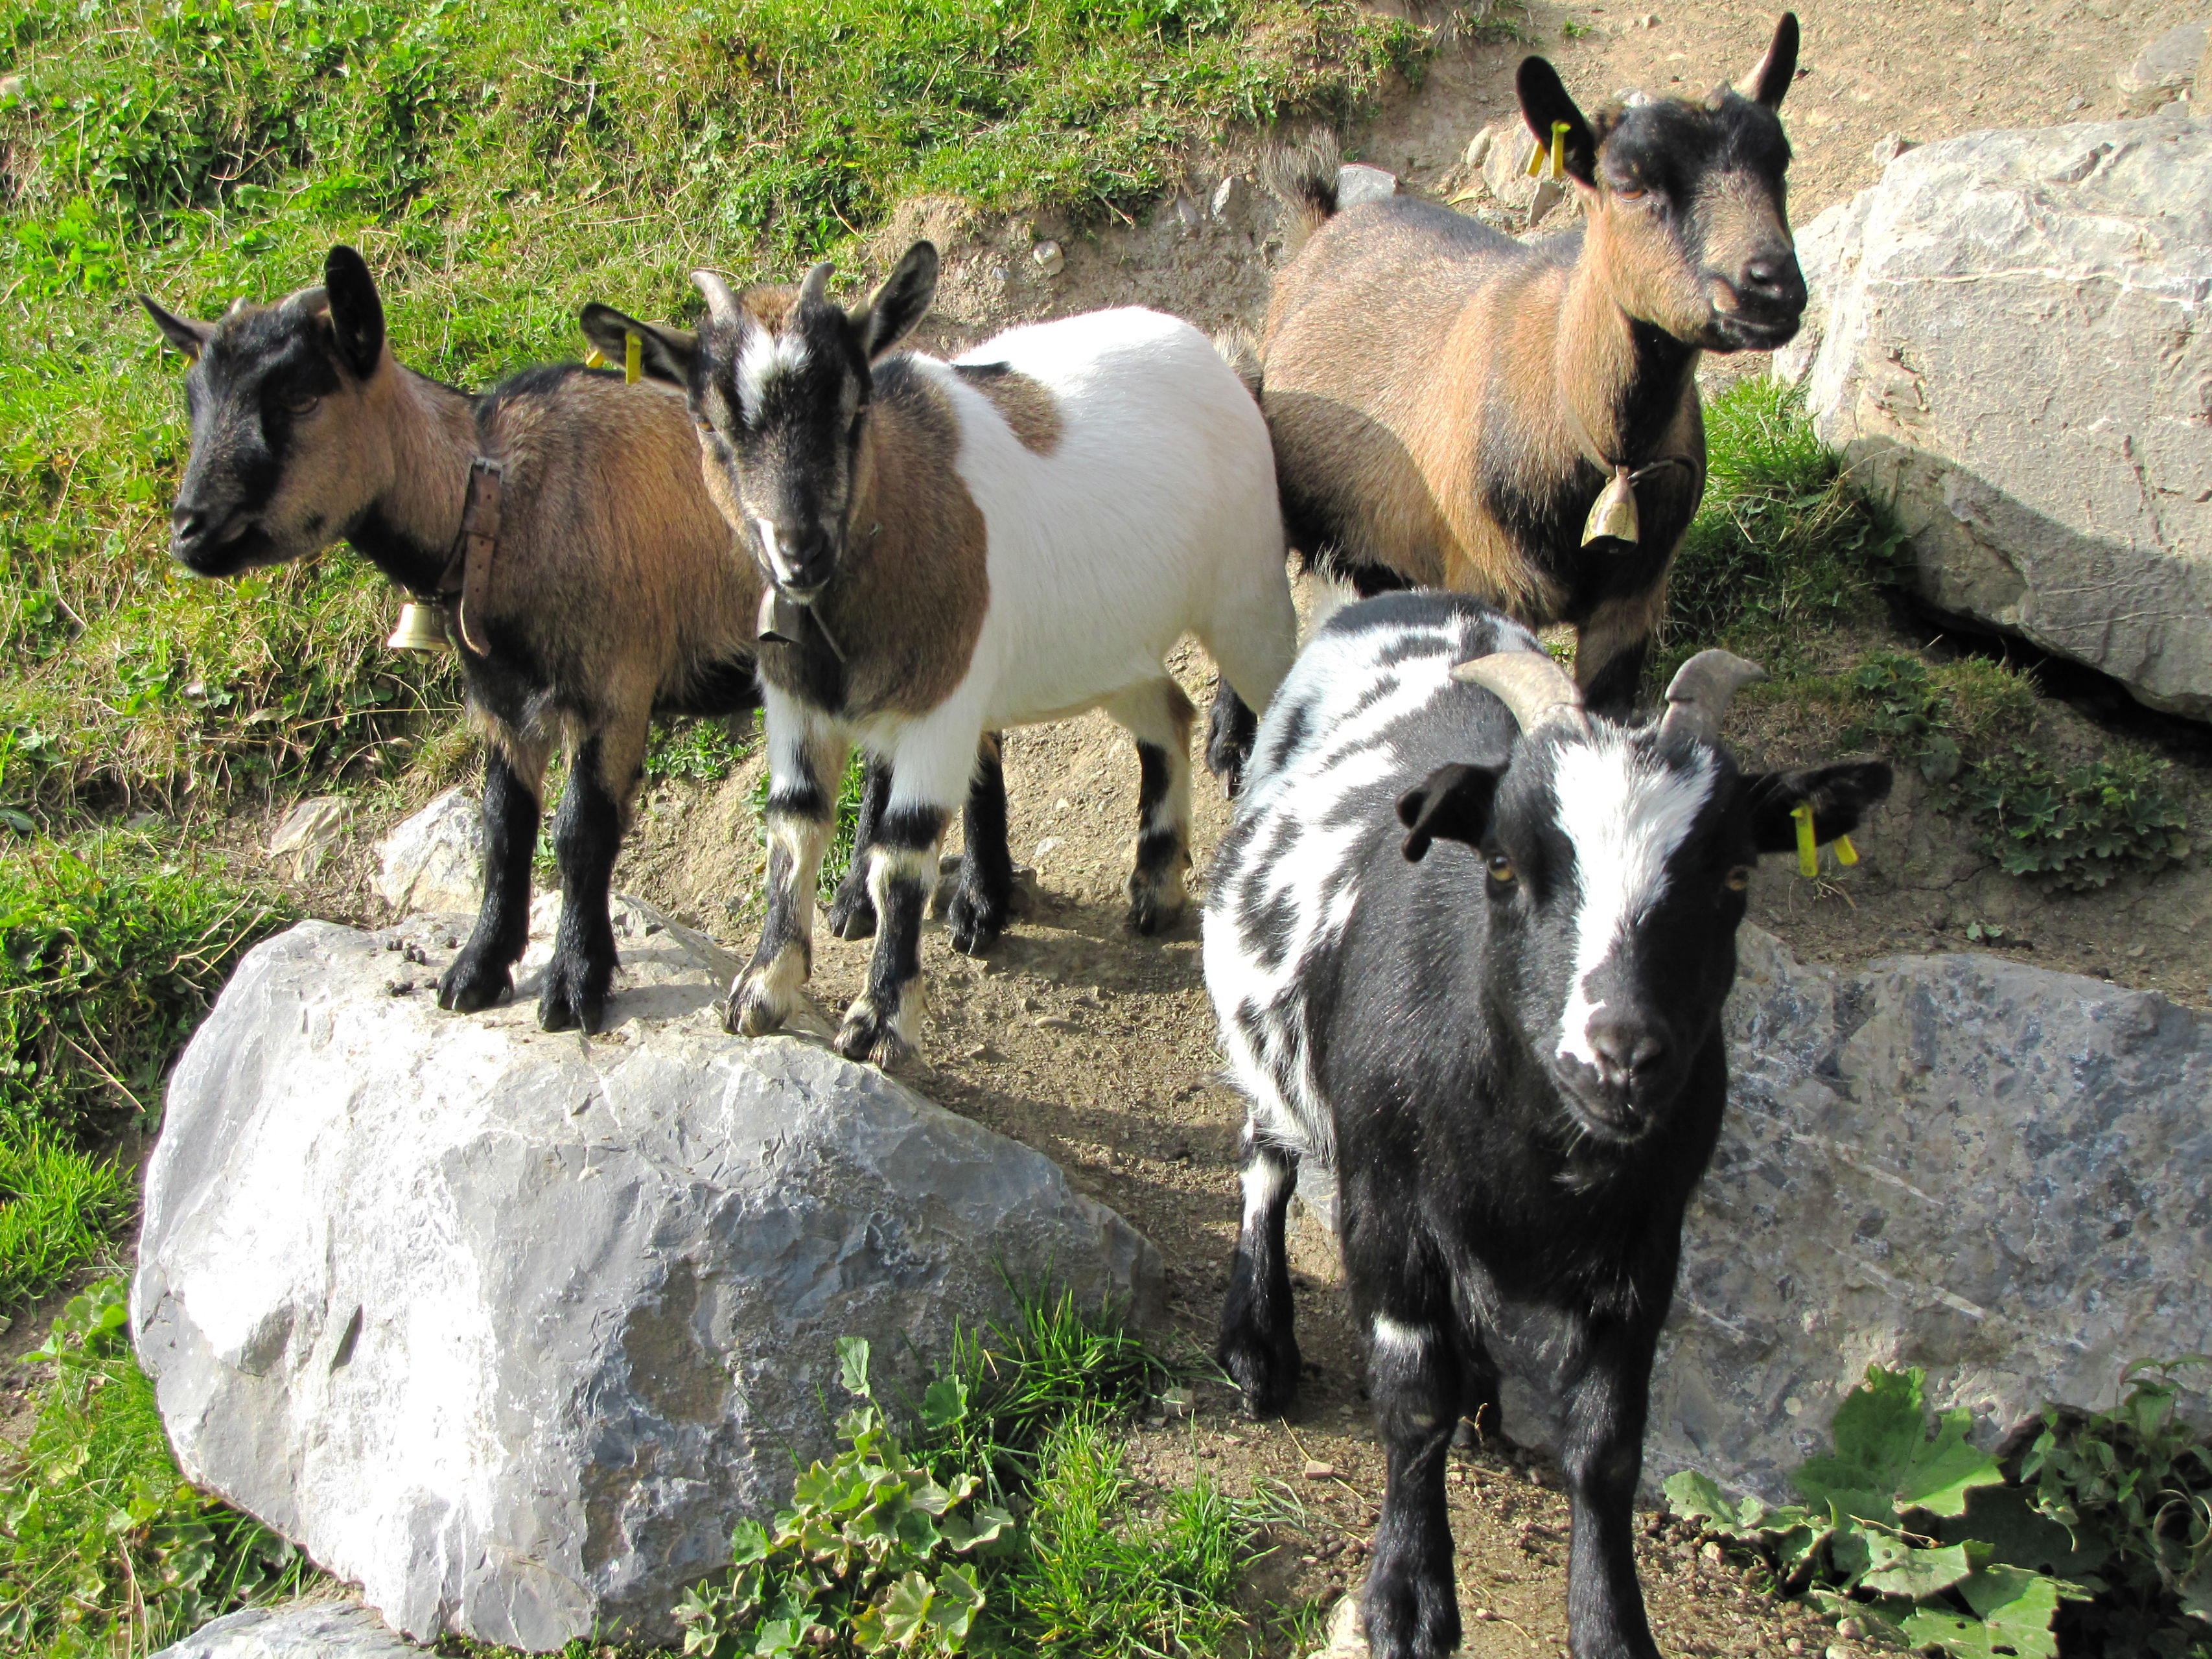 Wildlife park, pygmy goats, Le Relais, Les Crosets, Valais